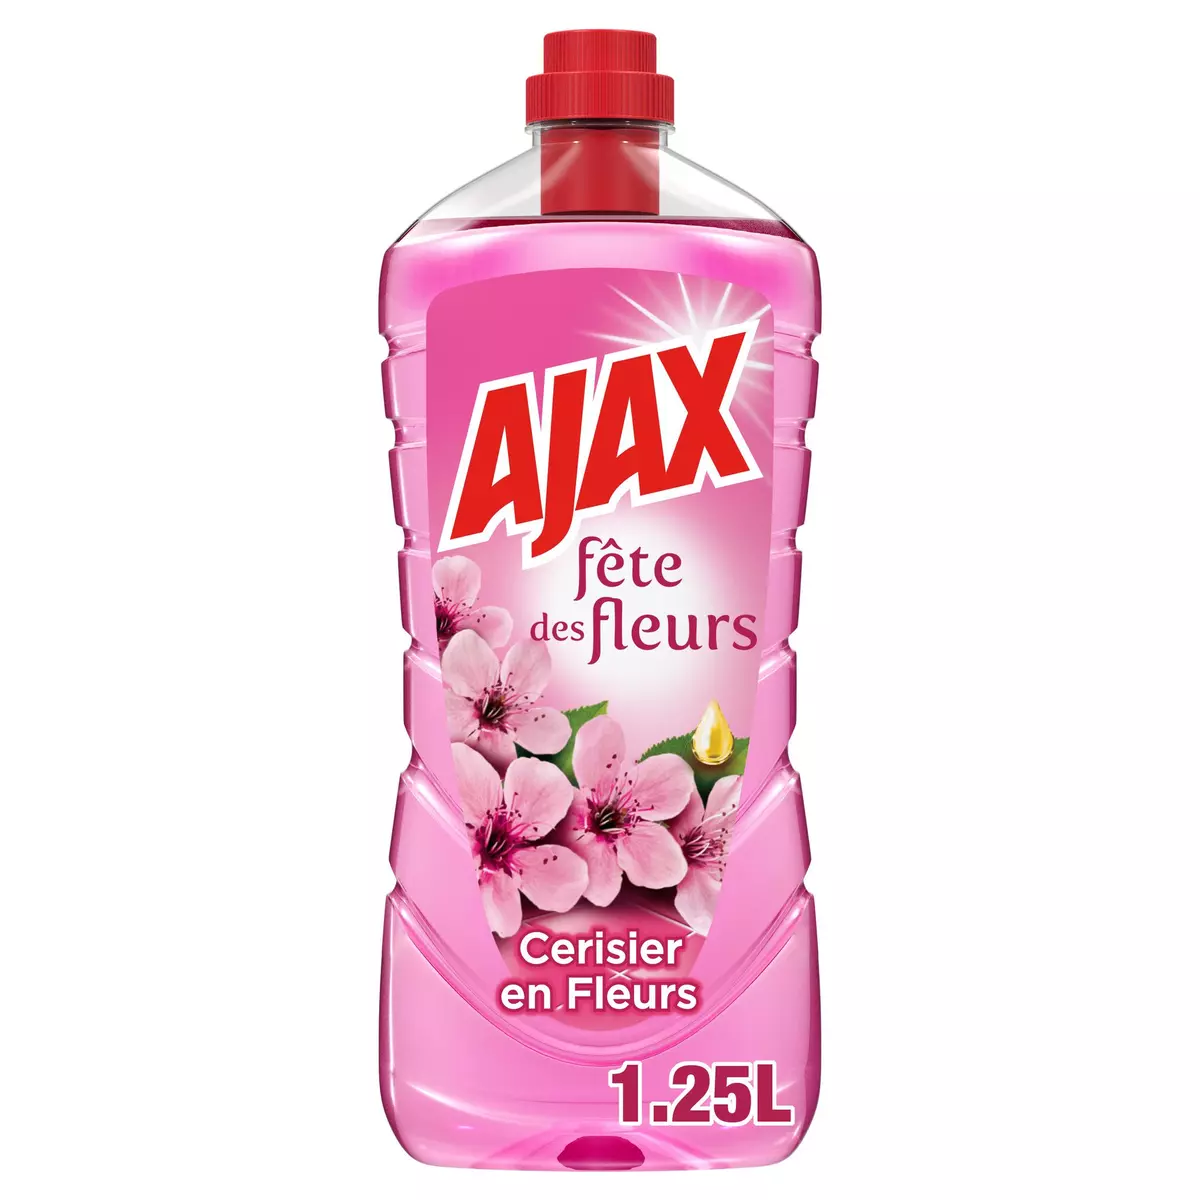 AJAX Nettoyant éco responsable fête des fleurs cerisier en fleurs 1,25l